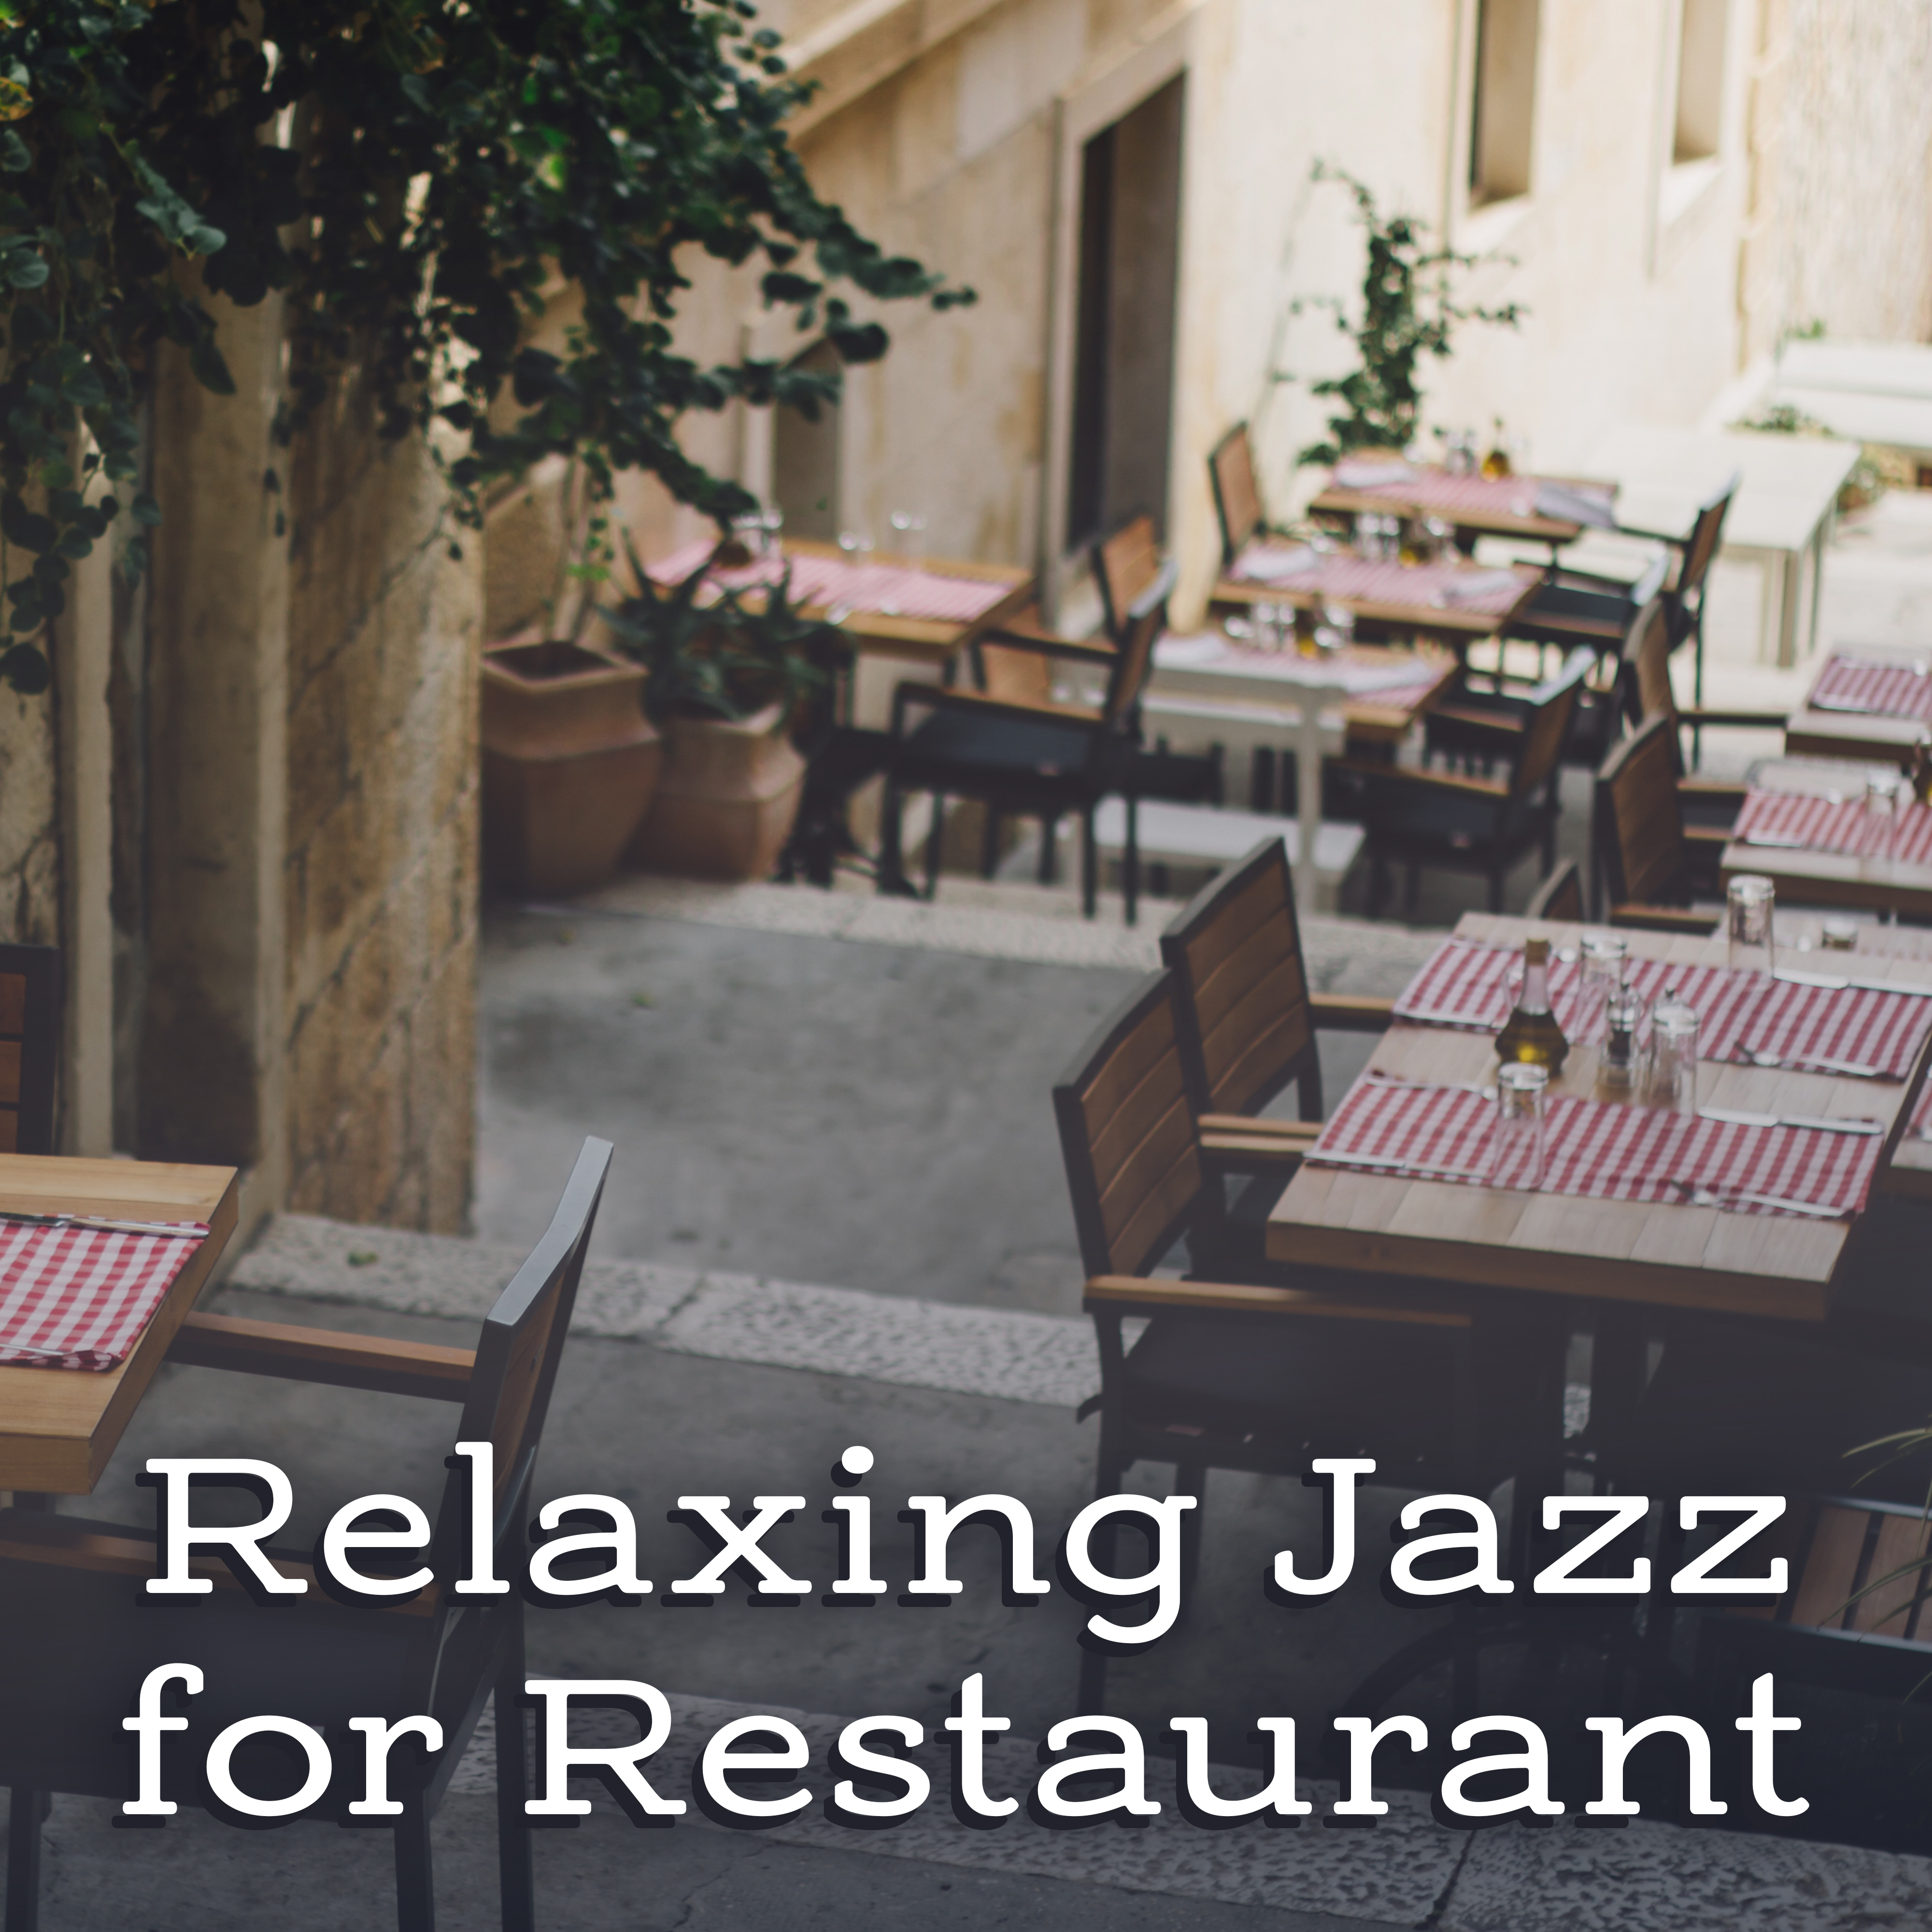 Restaurant Jazz